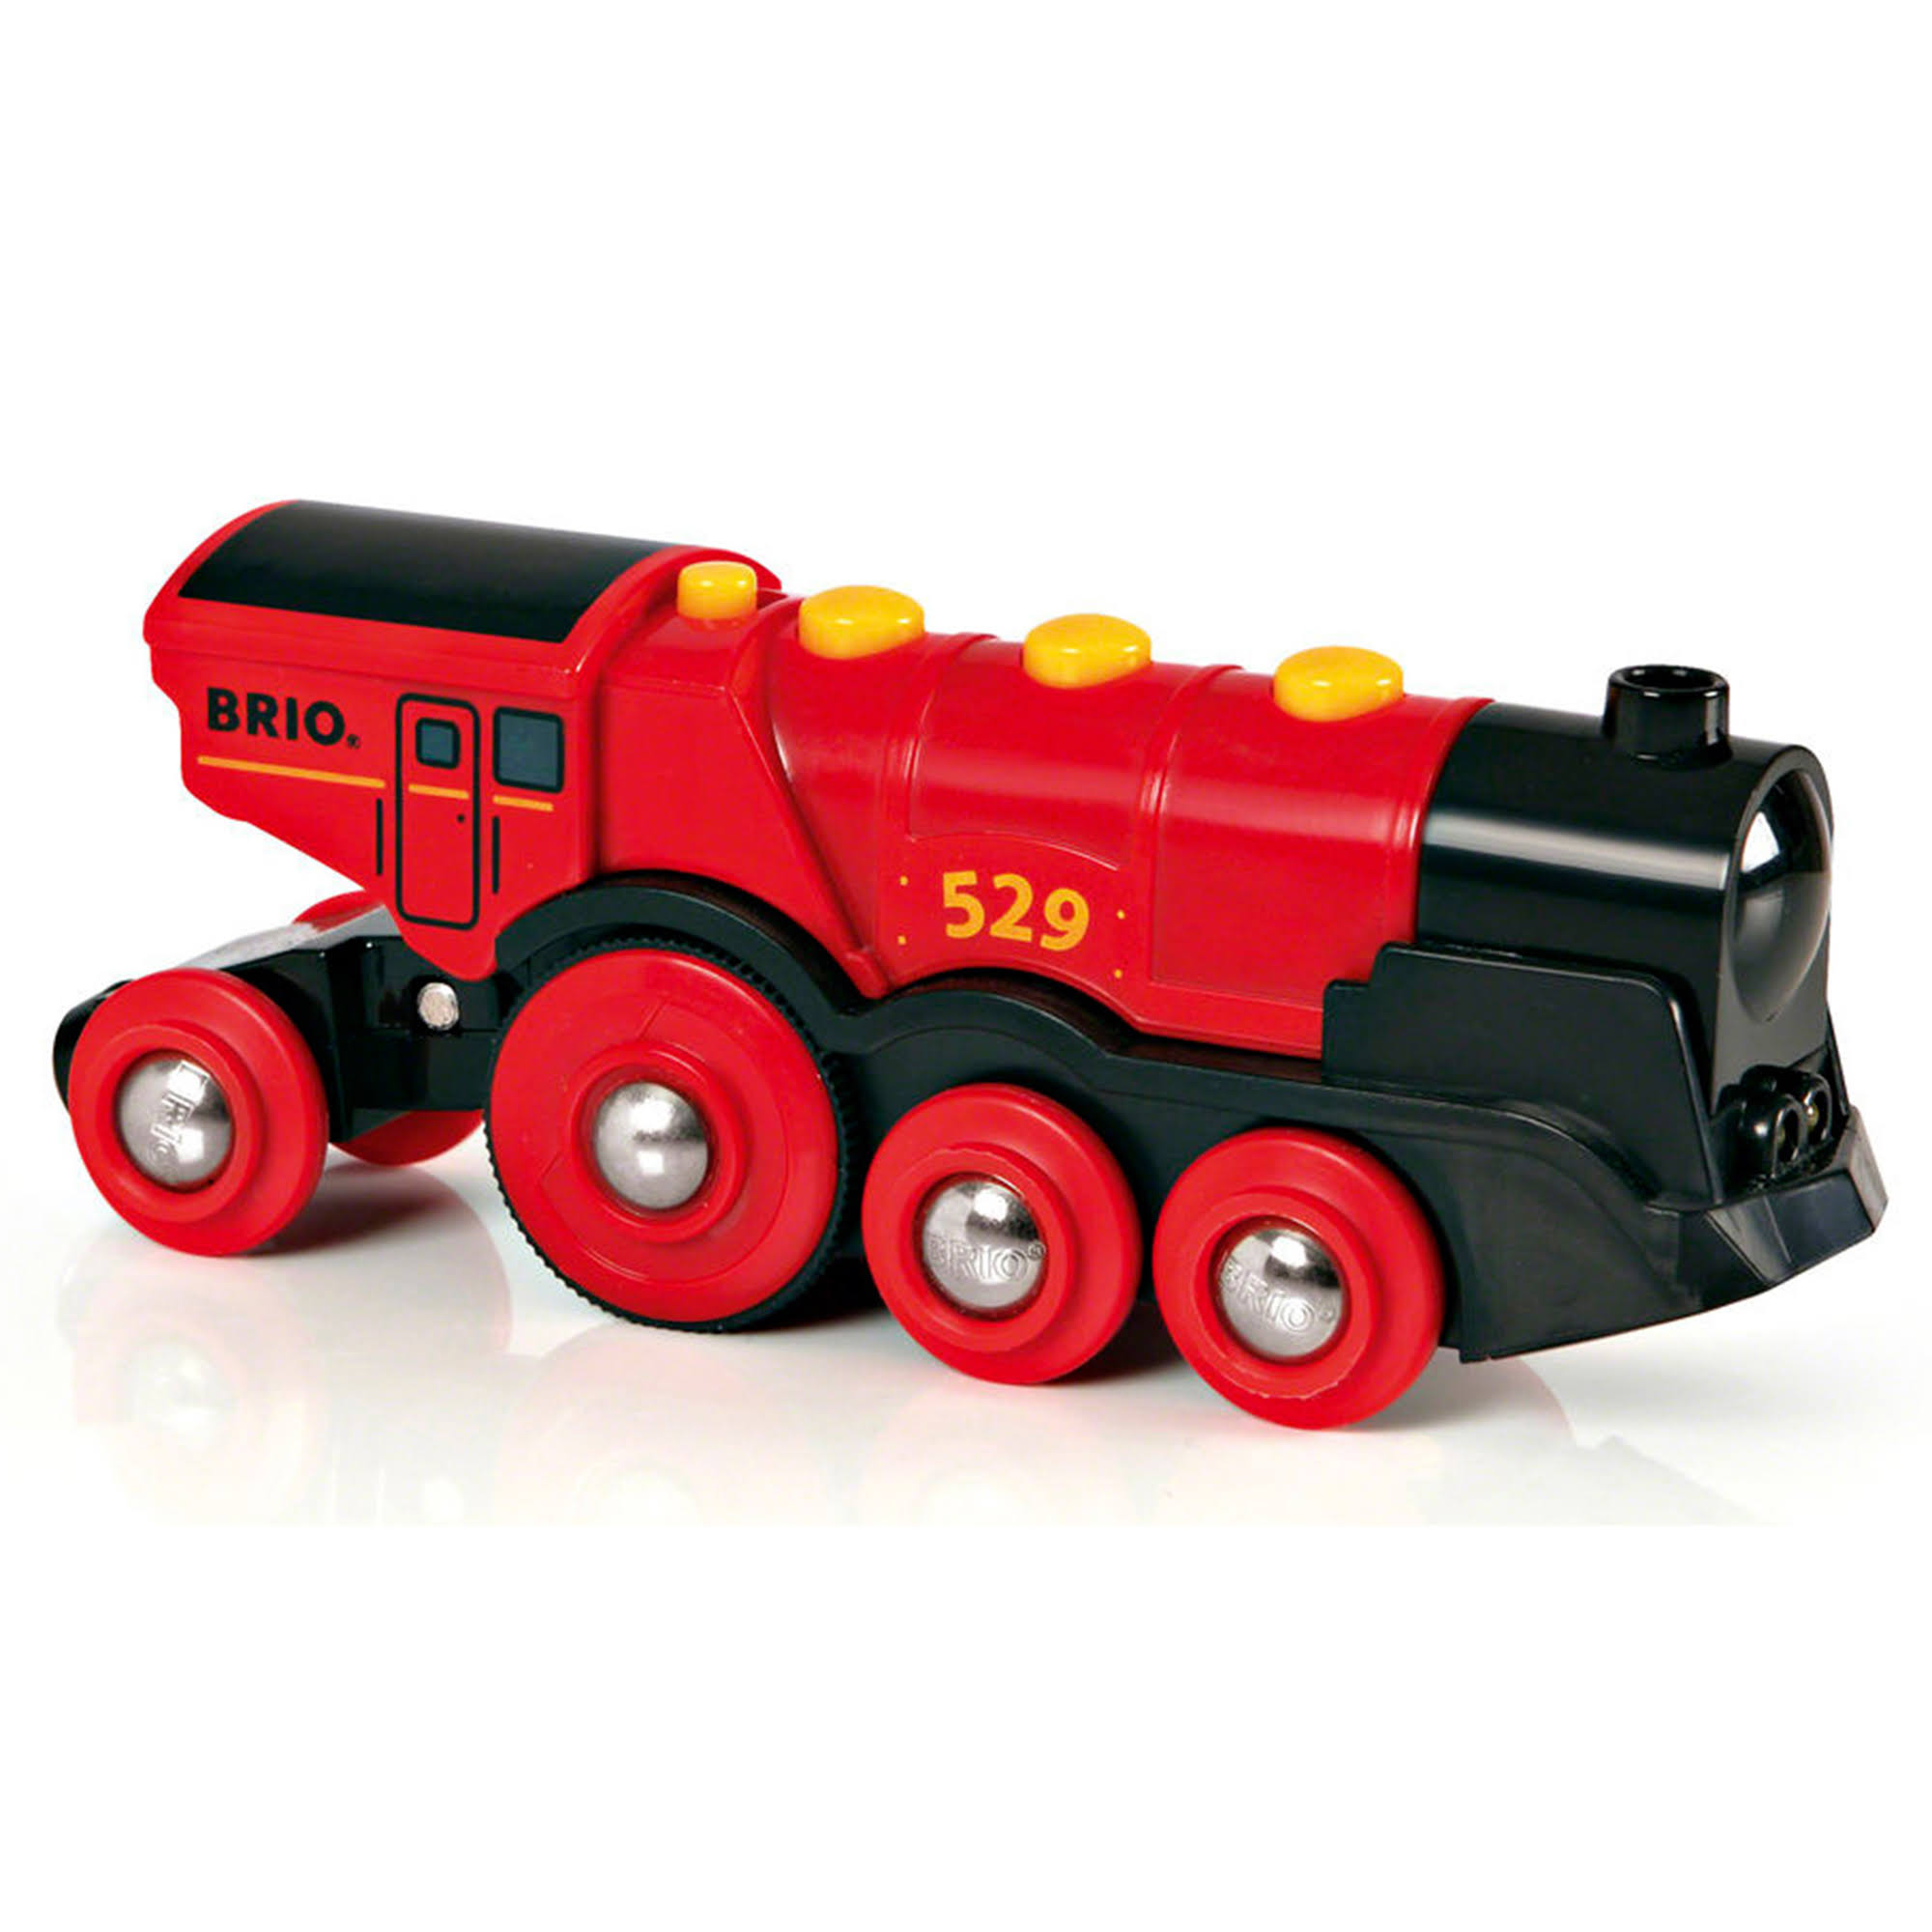 Brio 33592 Mighty Red Action Locomotive